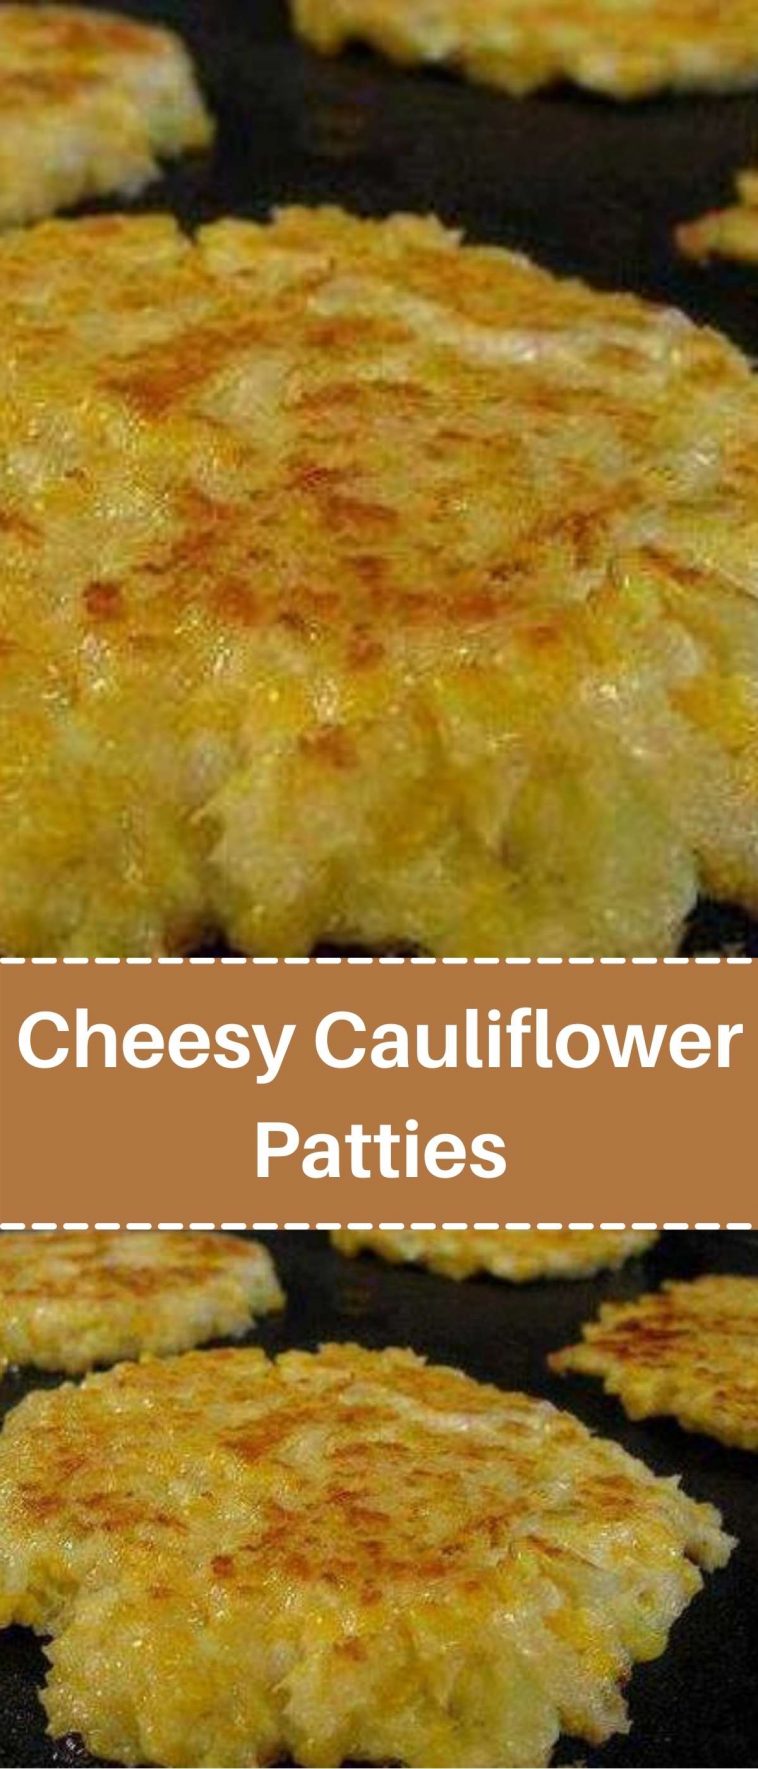 Cheesy Cauliflower Patties